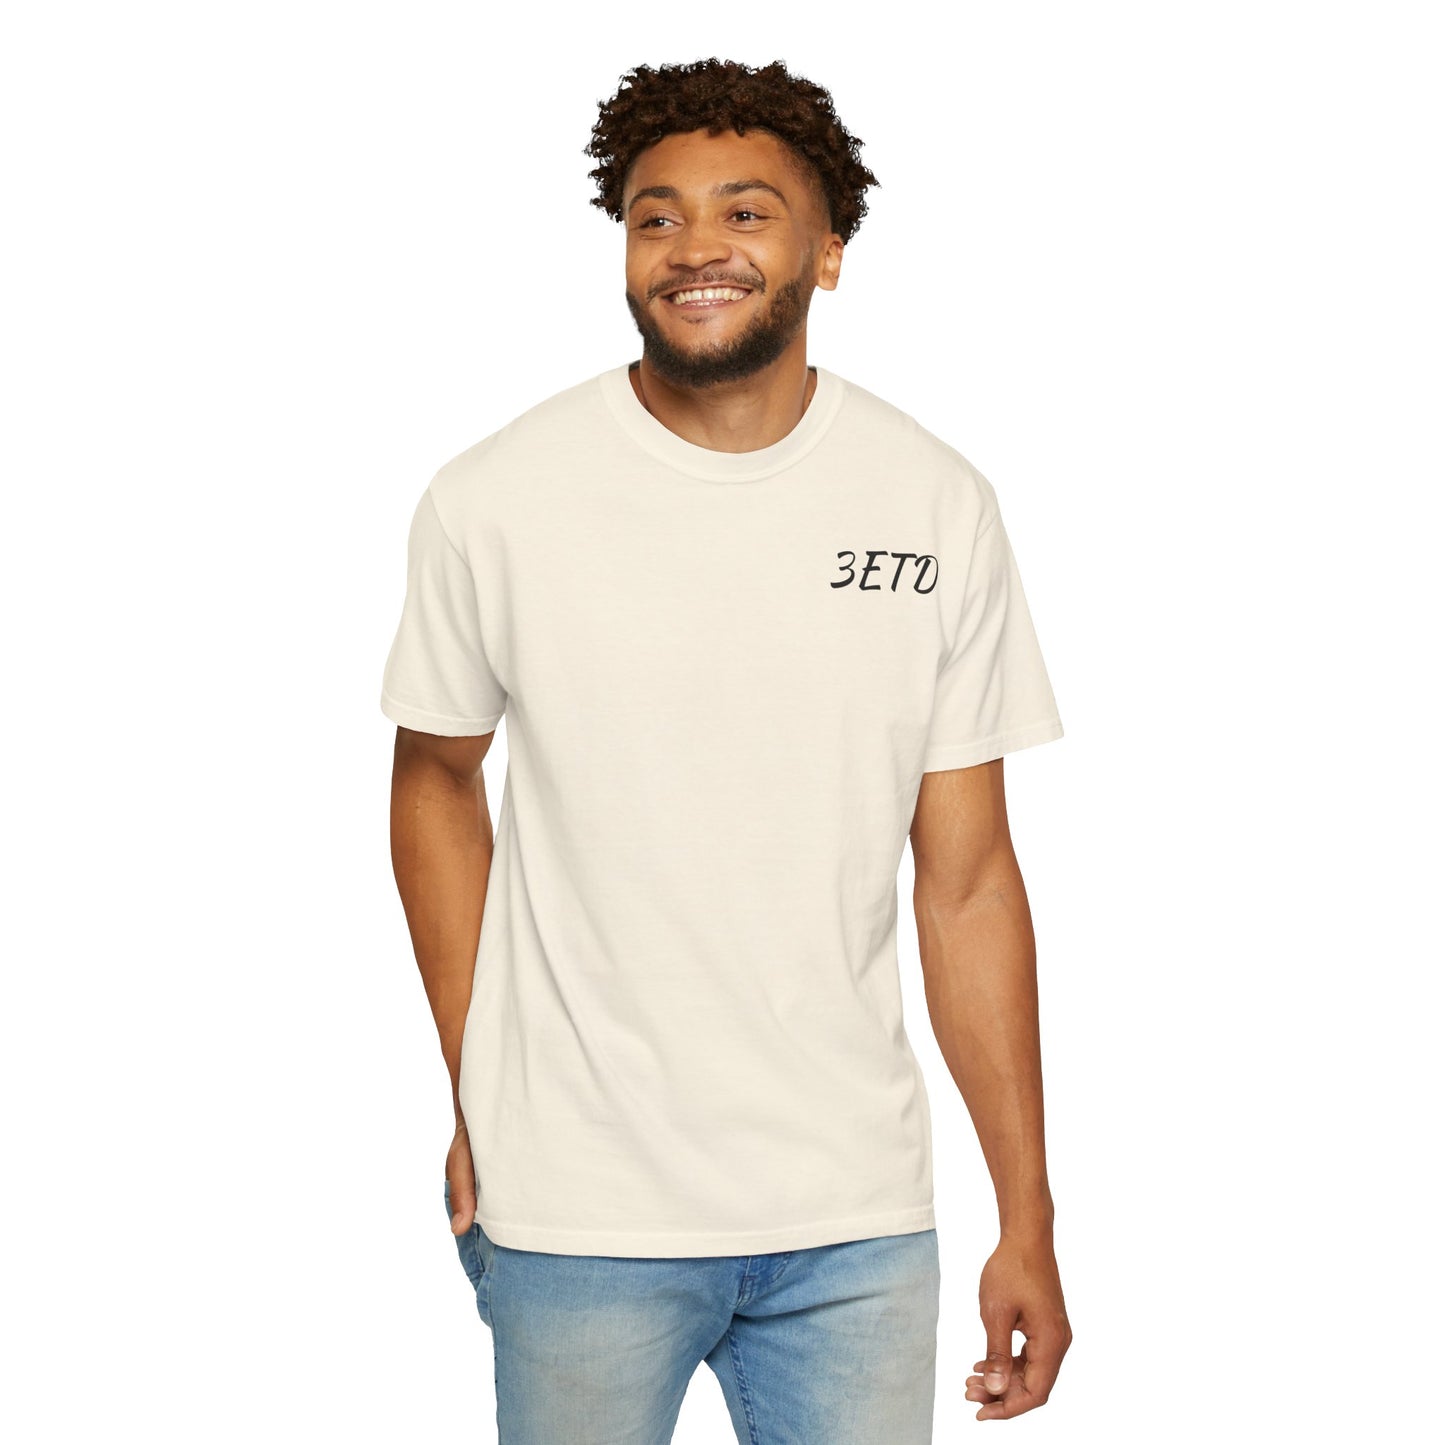 Men's 3ETD Logo Prt T Shirt